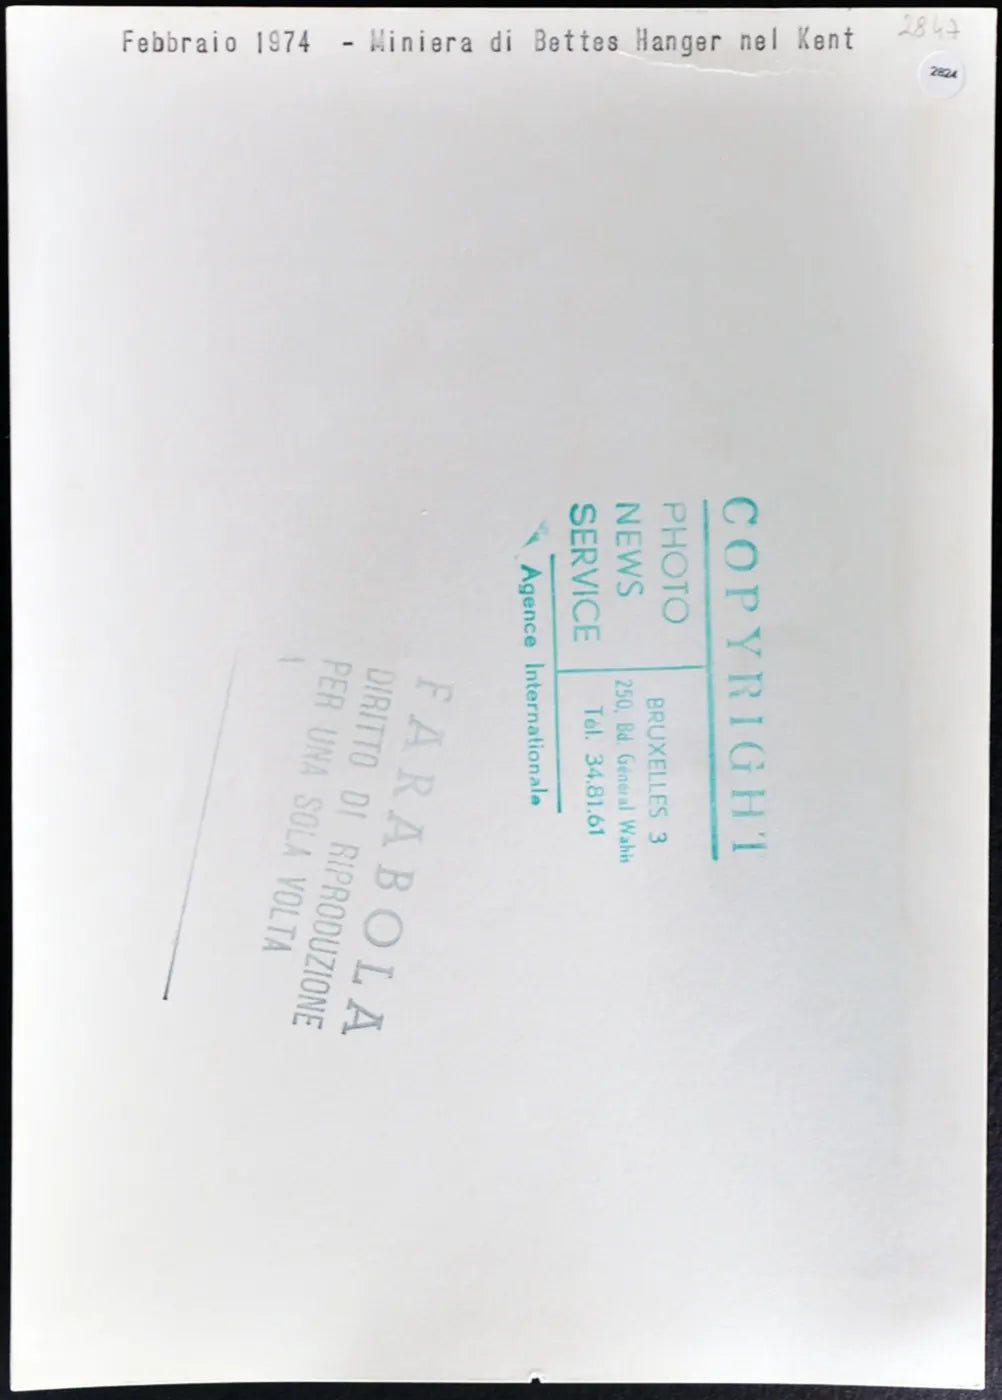 Miniera di Bettes Henger 1974 Ft 2824 - Stampa 20x30 cm - Farabola Stampa ai sali d'argento